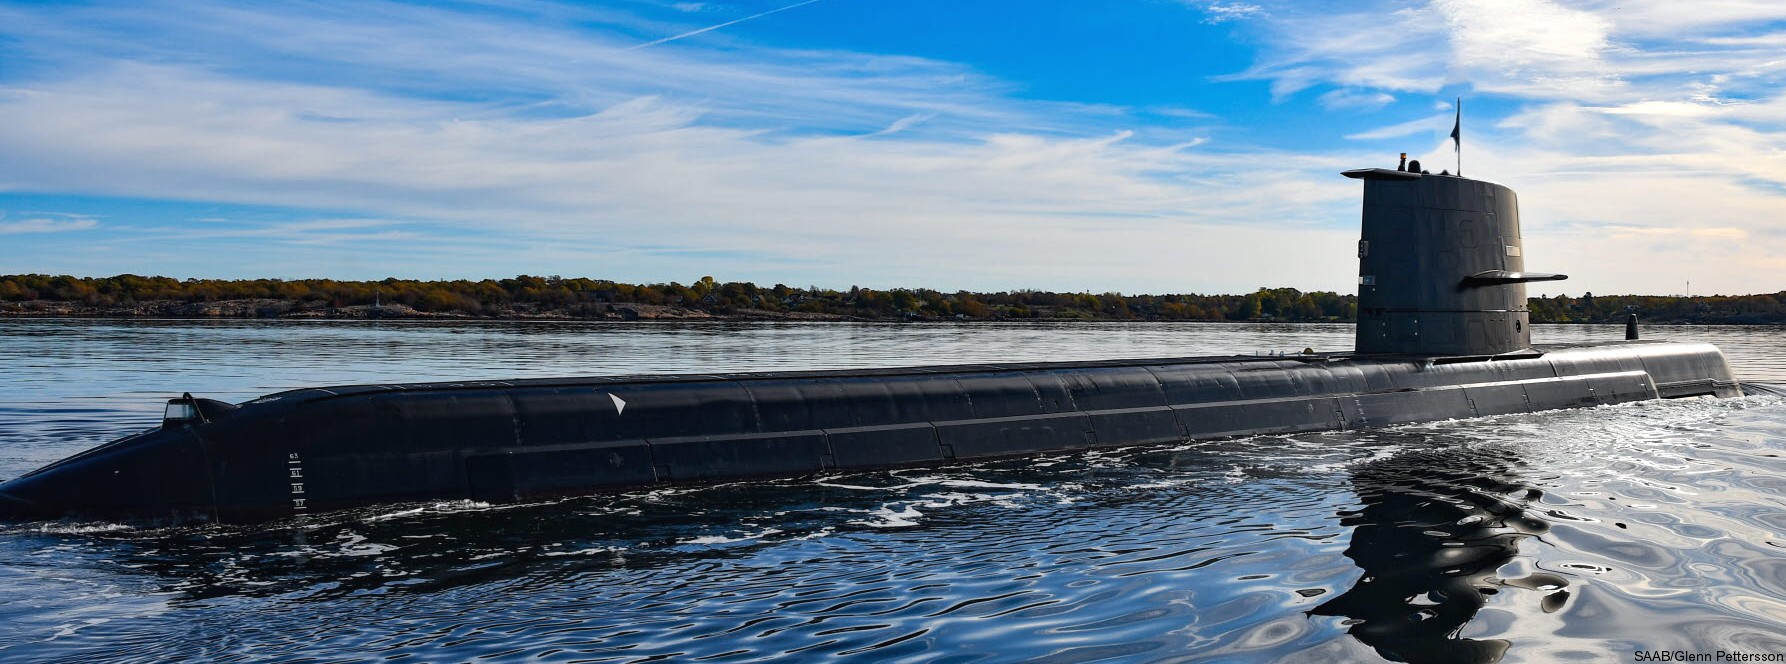 hswms hms gotland gtd class submarine ssk swedish navy svenska marinen försvarsmakten kockums 04